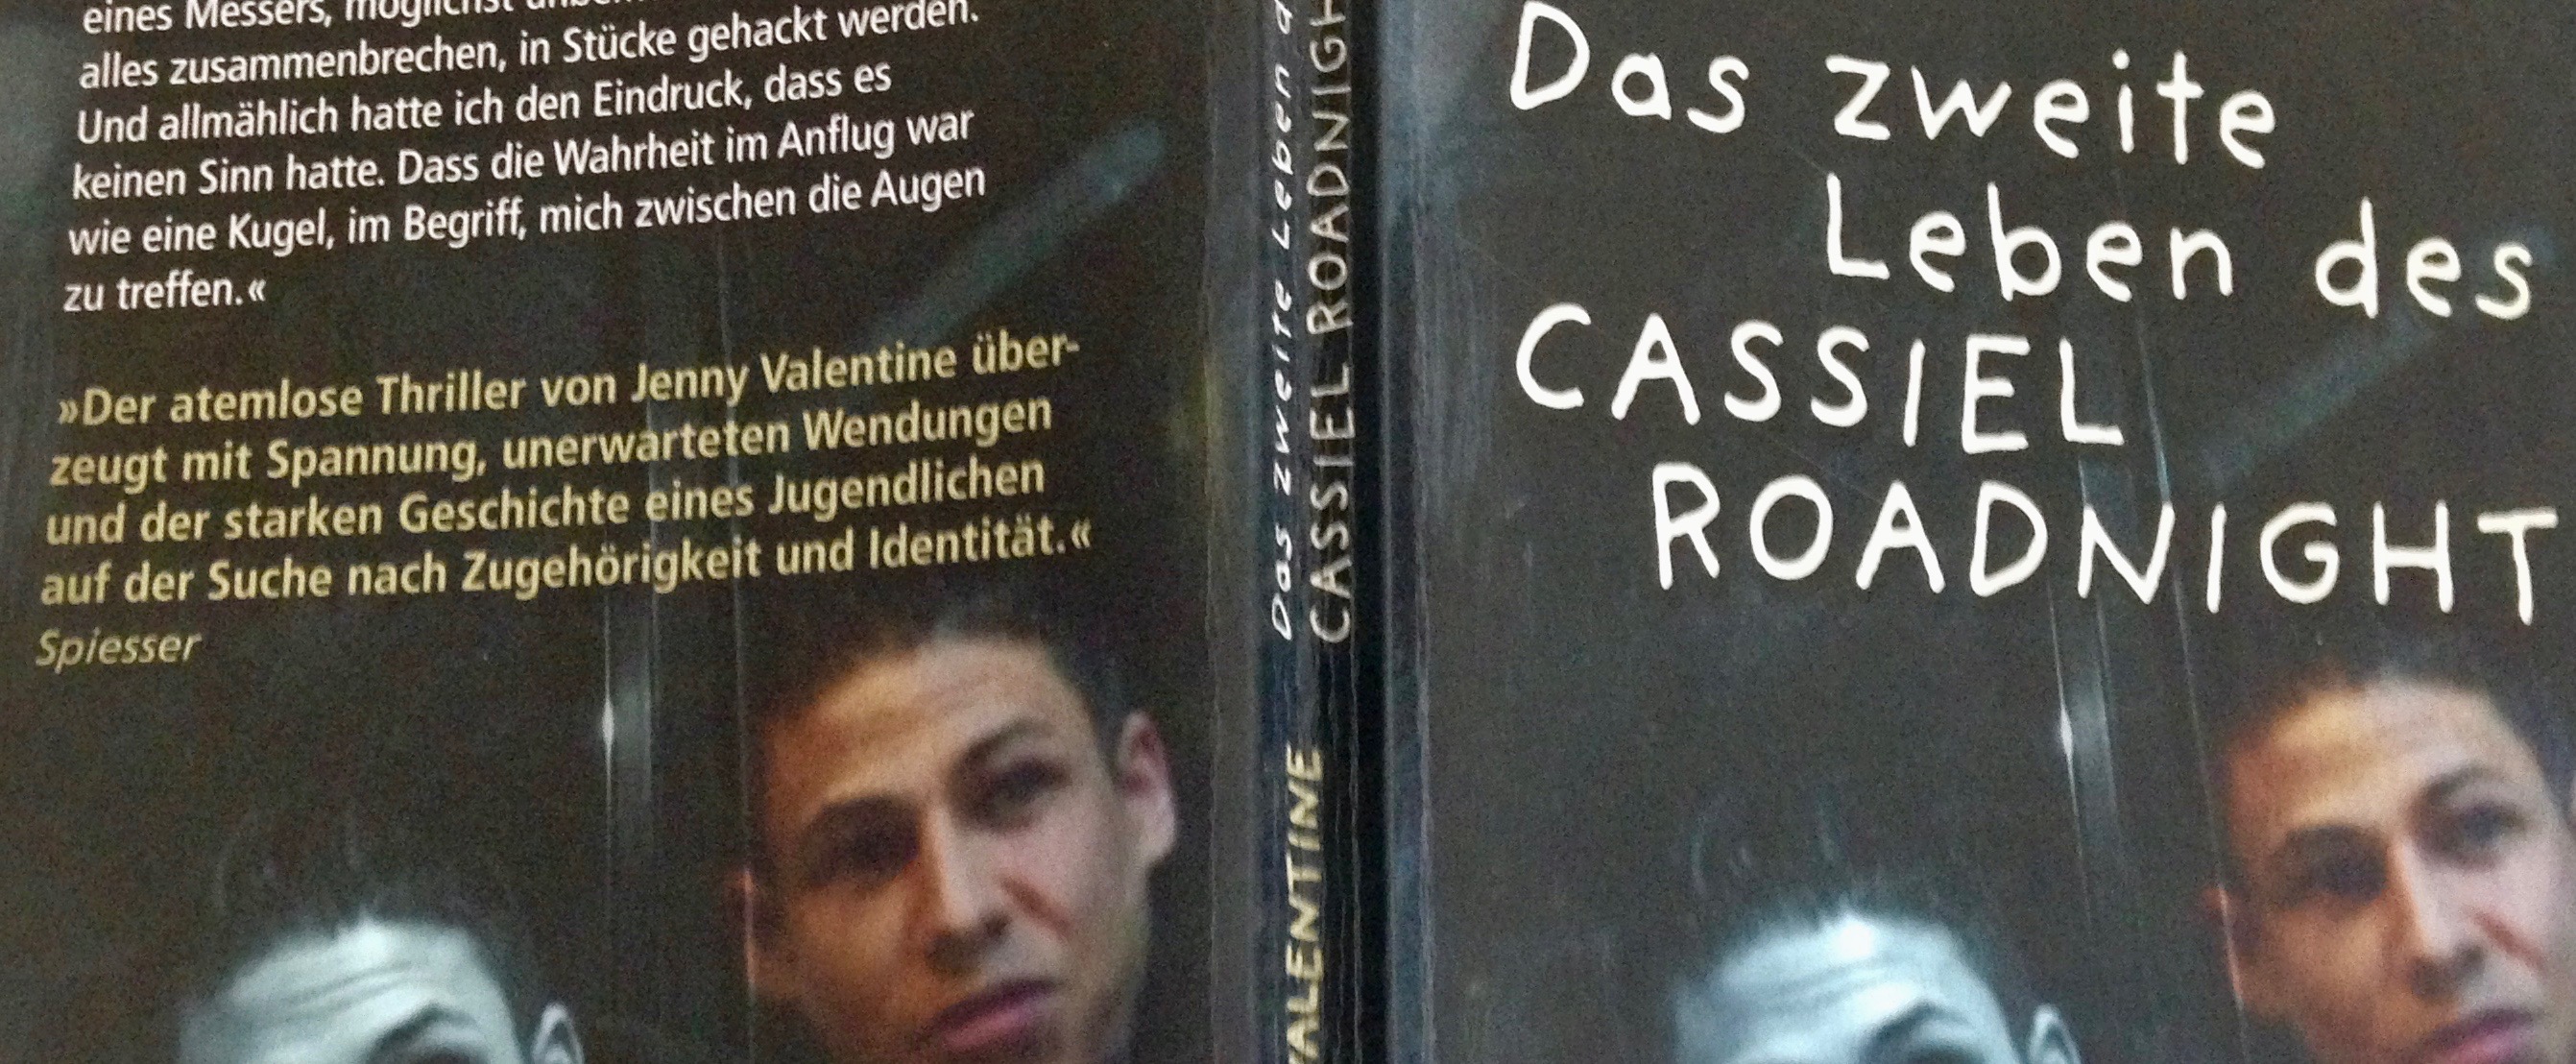 Buchcover "Das zweite Leben des Cassiel Roadnight"